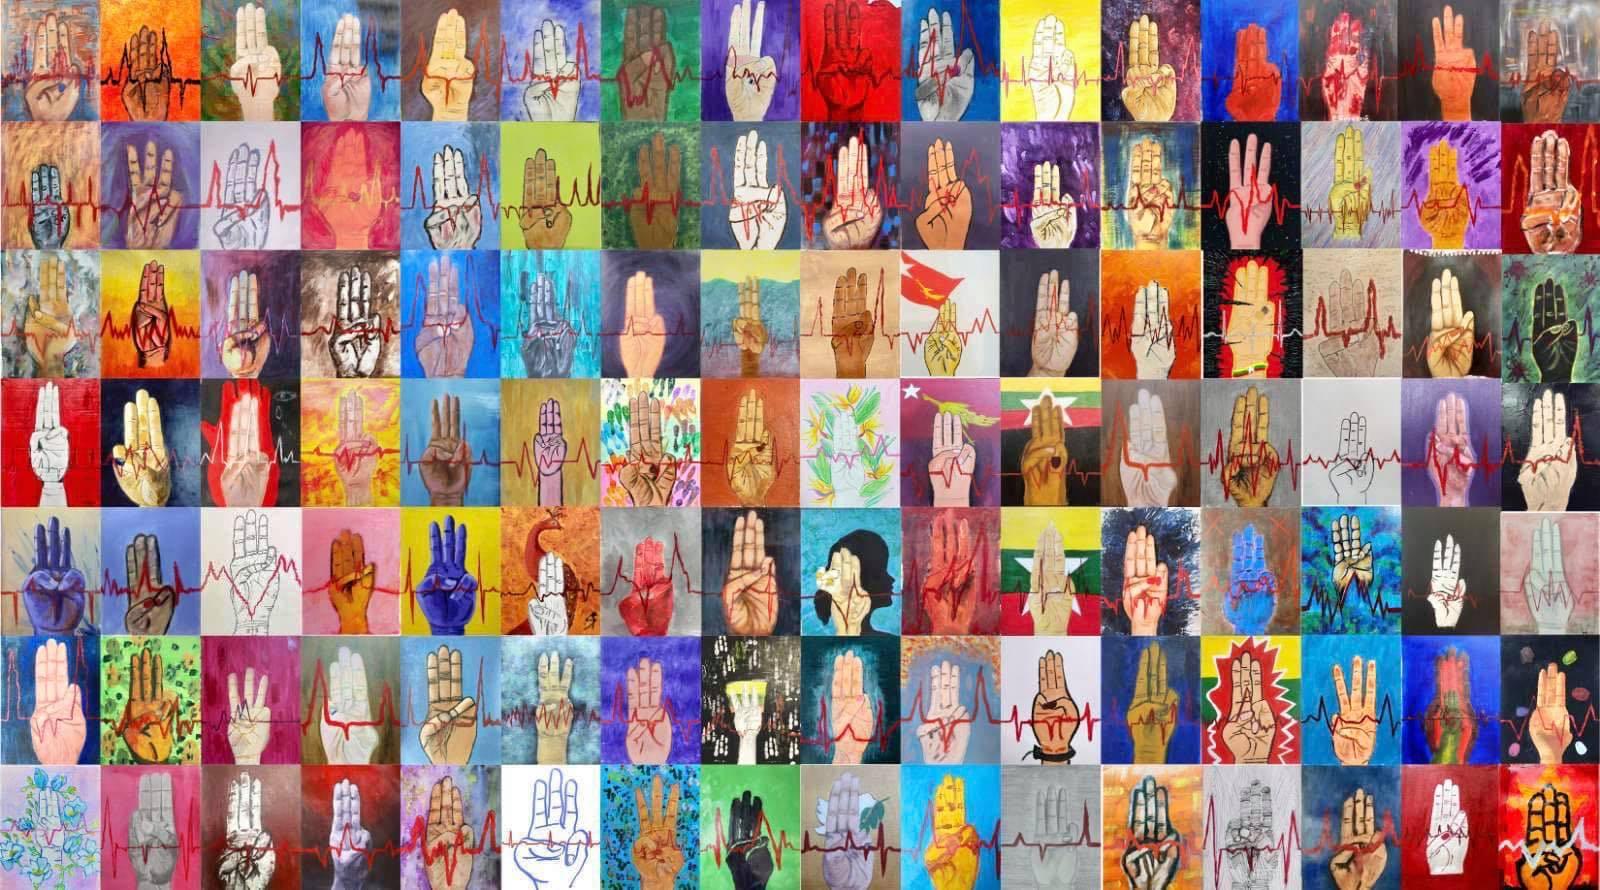 La fresque de Kin Zaw Latt avec les contributions de 120 artistes. [facebook.com/khin.z.latt]